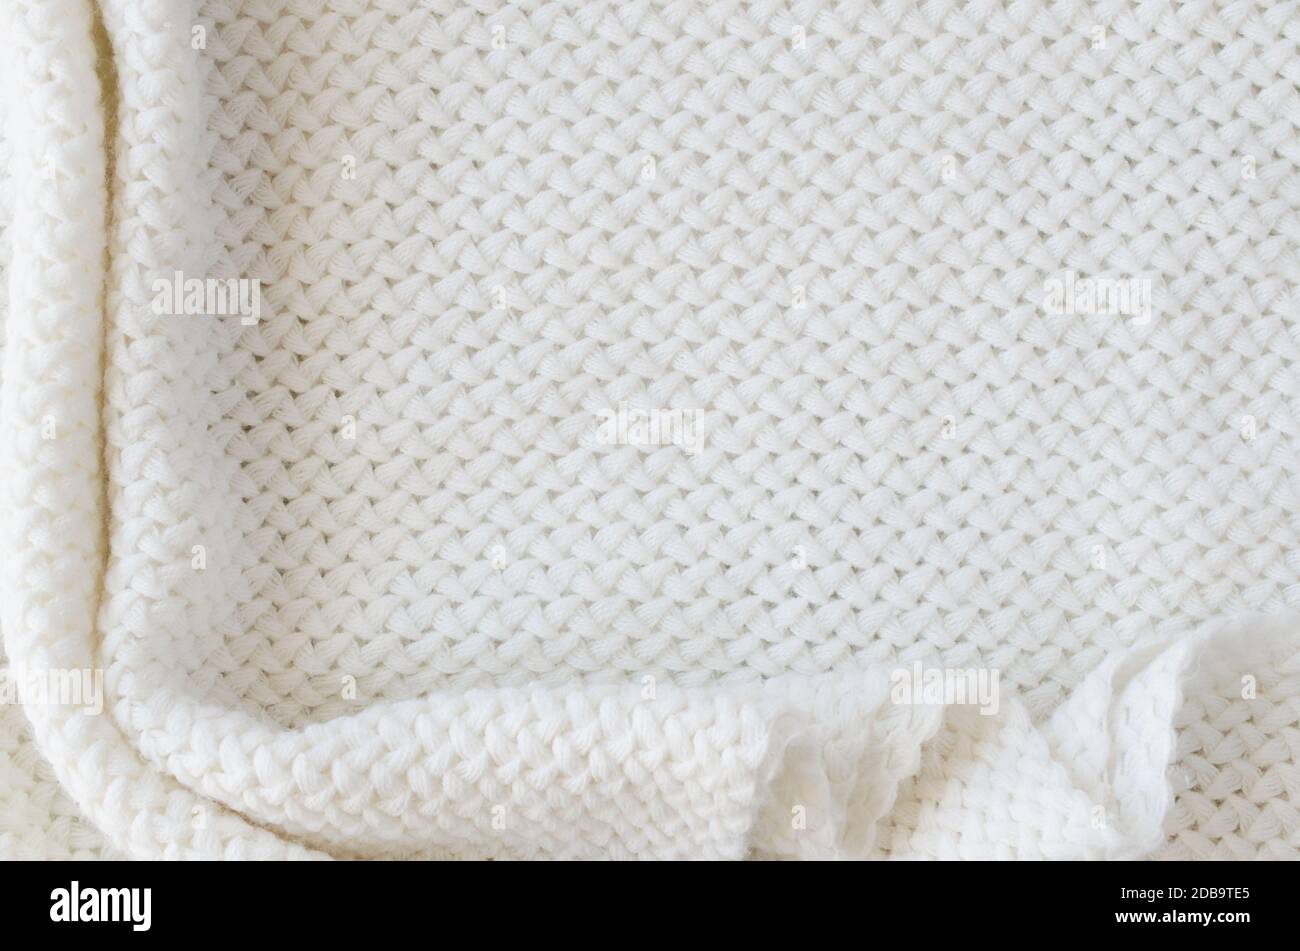 Fond en laine tricoté beige. Texture en tissu tricot. Décor minimaliste scandinave avec espace de copie, vue de dessus Banque D'Images